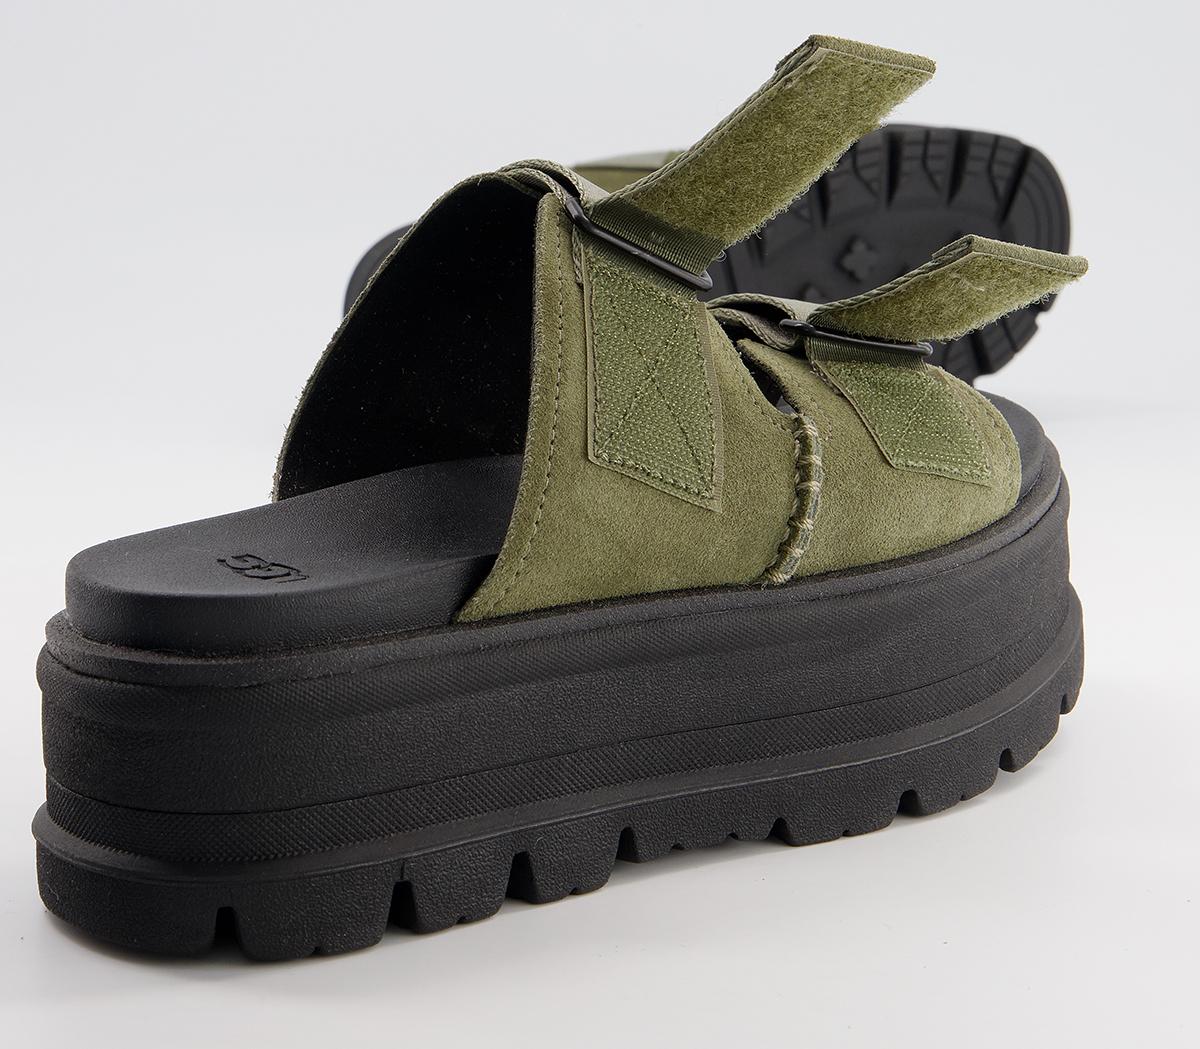 UGG Clem Sandals Burnt Olive Suede - Women’s Sandals